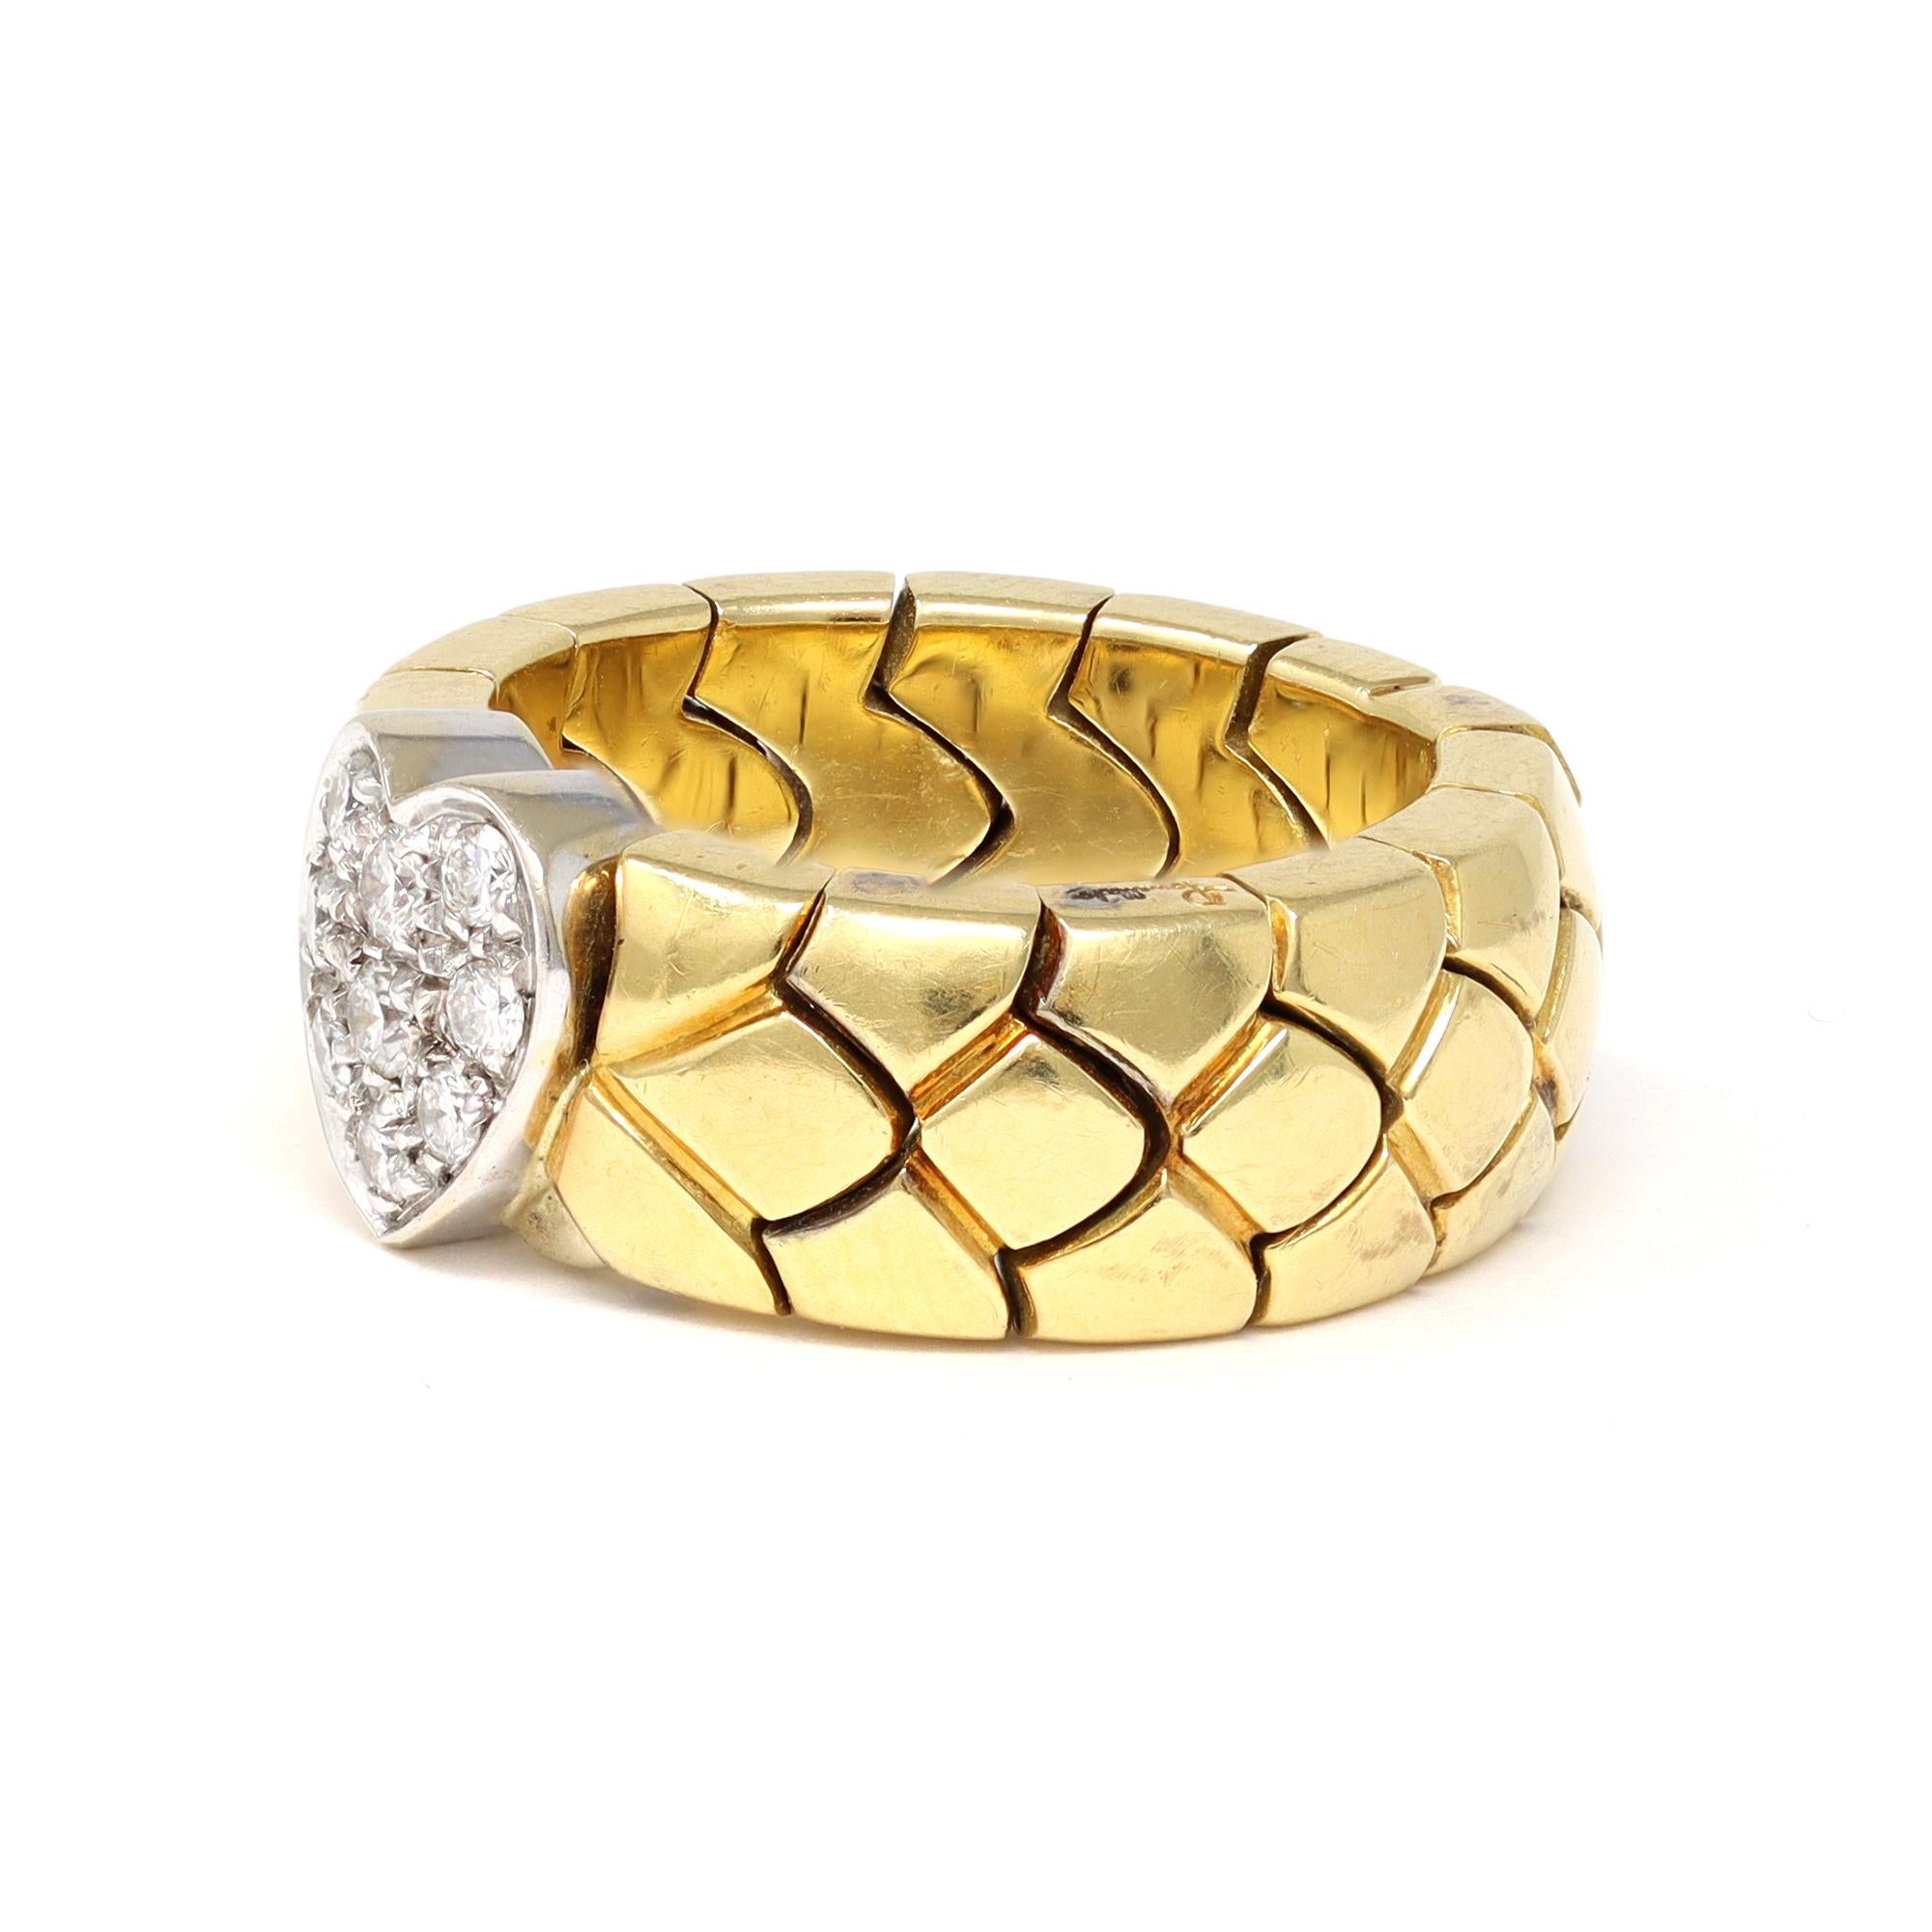 Un anneau semi-flexible à deux tons signé par la célèbre maison de joaillerie Pomellato. Whiting se compose d'un lien flexible en or jaune 18 carats et d'un cœur en diamant serti en or blanc 18 carats. Les diamants ont une taille de 0,20 carats, une